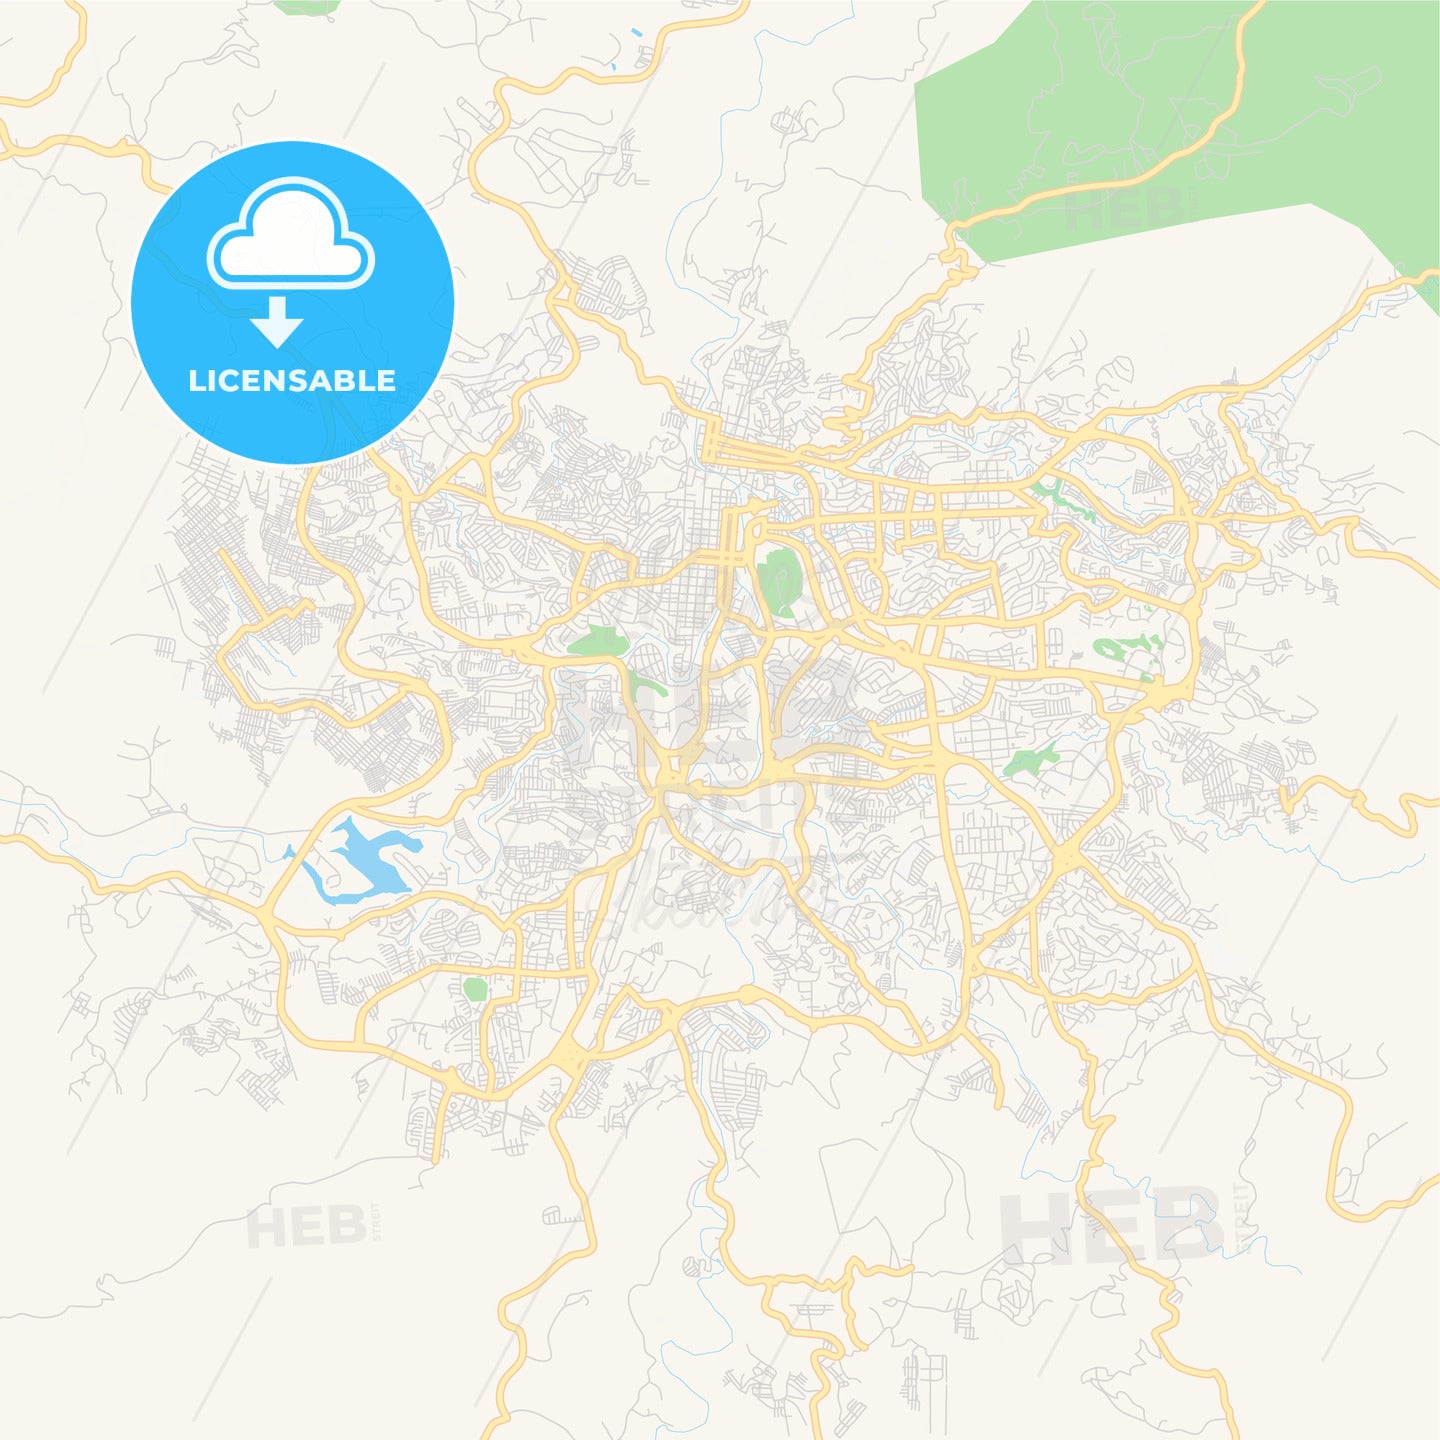 Empty vector map of Tegucigalpa, Francisco Morazán, Honduras